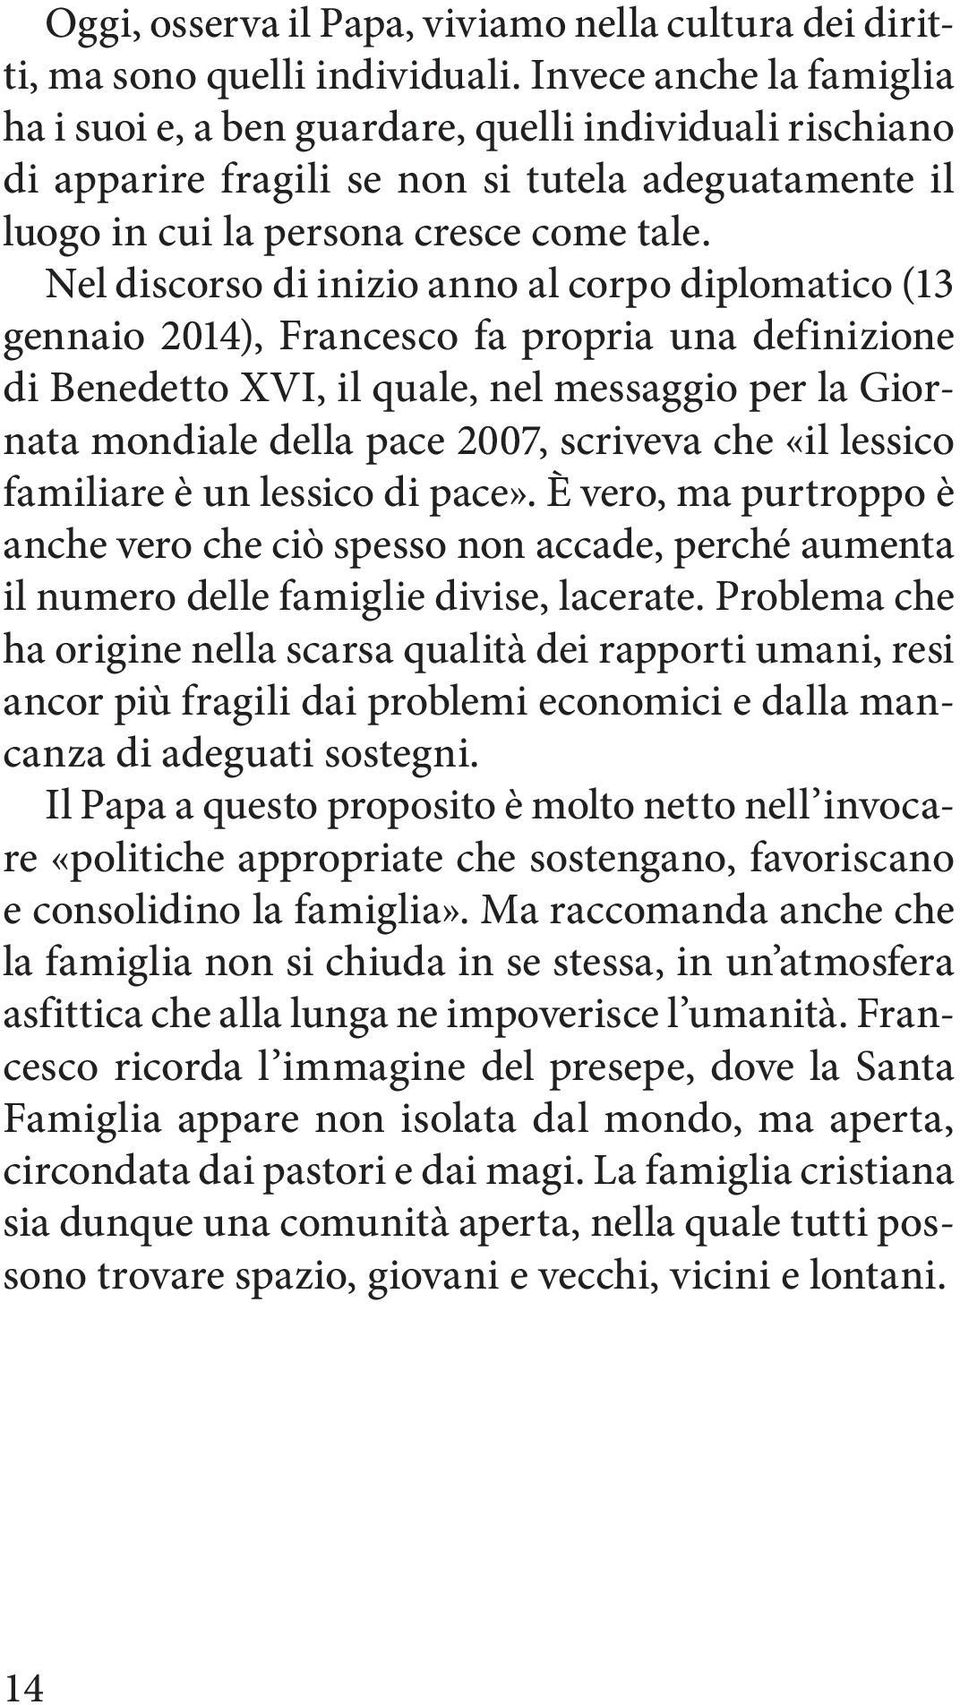 Nel discorso di inizio anno al corpo diplomatico (13 gennaio 2014), Francesco fa propria una definizione di Benedetto XVI, il quale, nel messaggio per la Giornata mondiale della pace 2007, scriveva